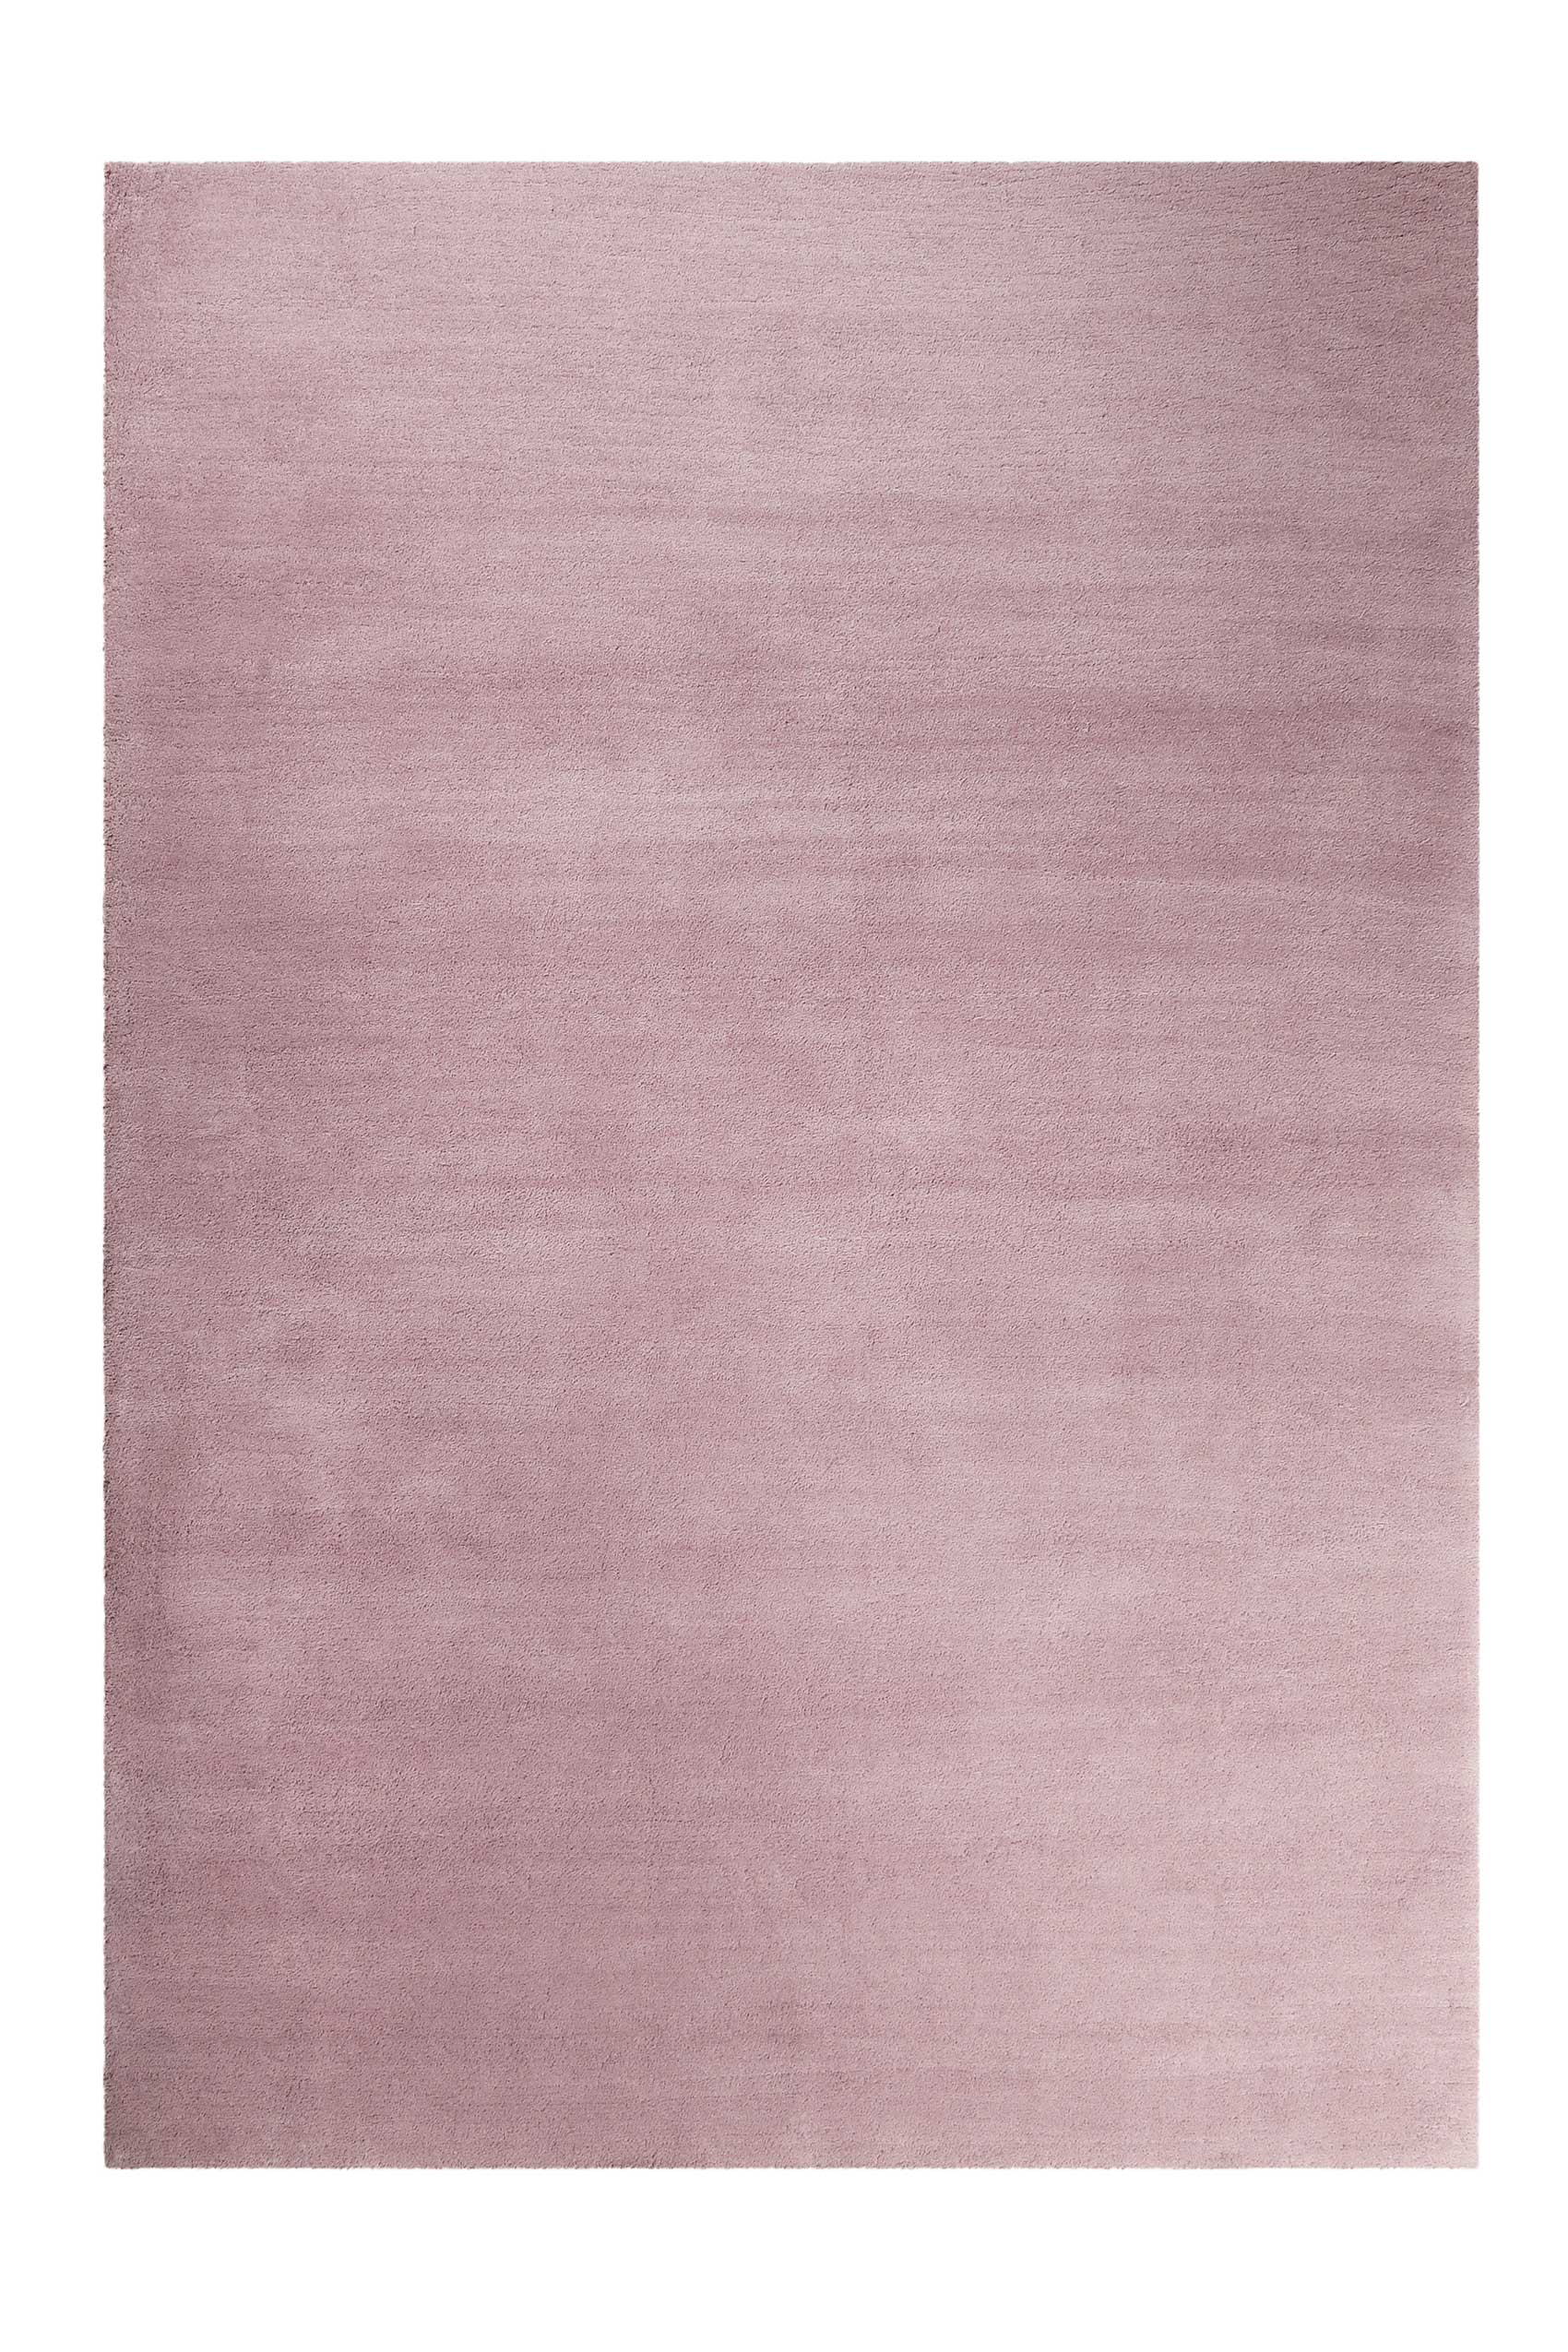 Esprit Teppich pastell Rosa Hochflor » Loft « - Ansicht 2